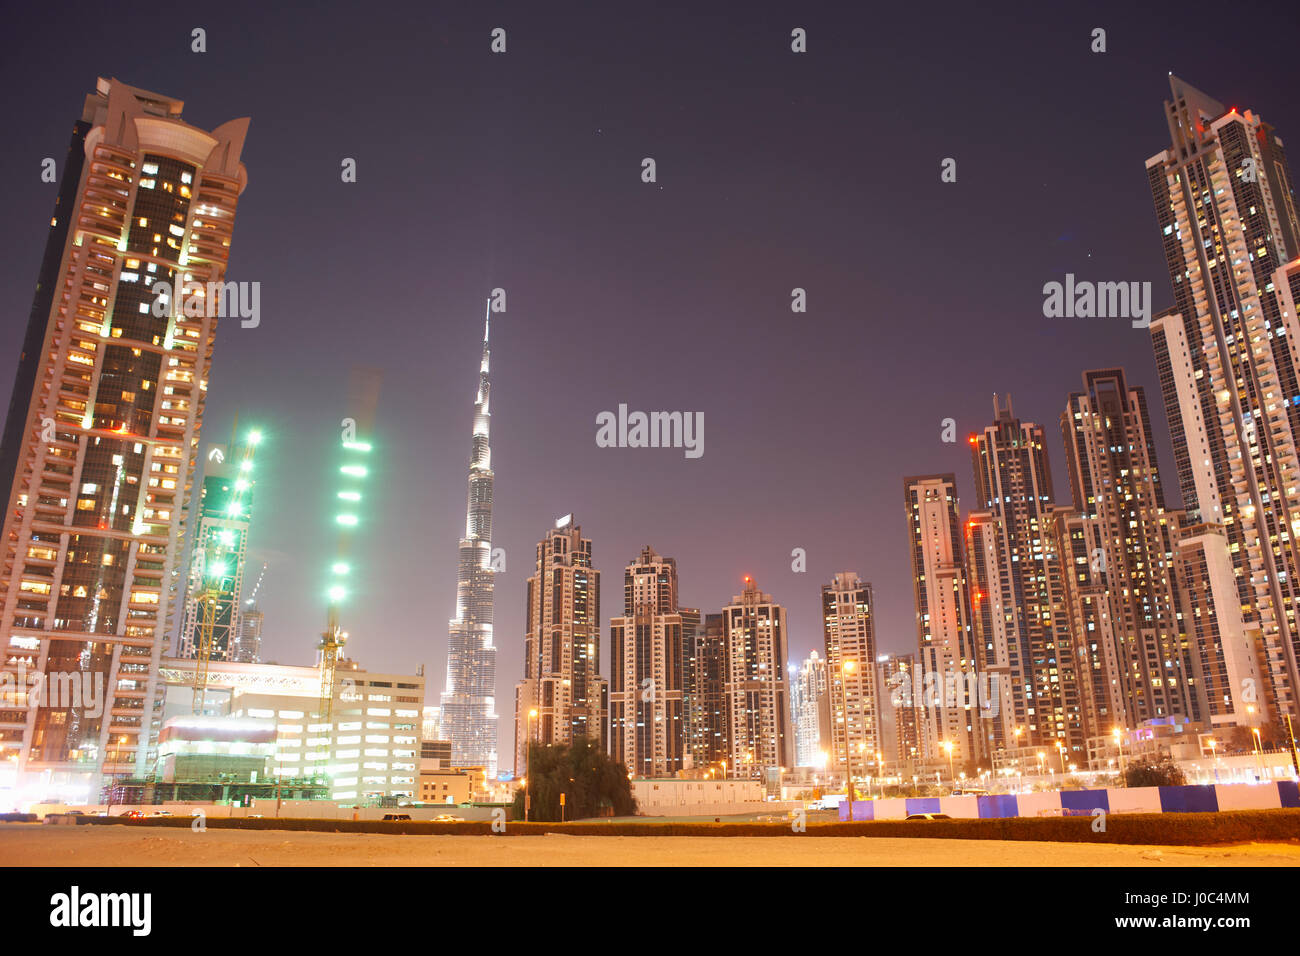 Cityscape at night showing Burj Khalifa in background, Dubai, UAE Stock Photo